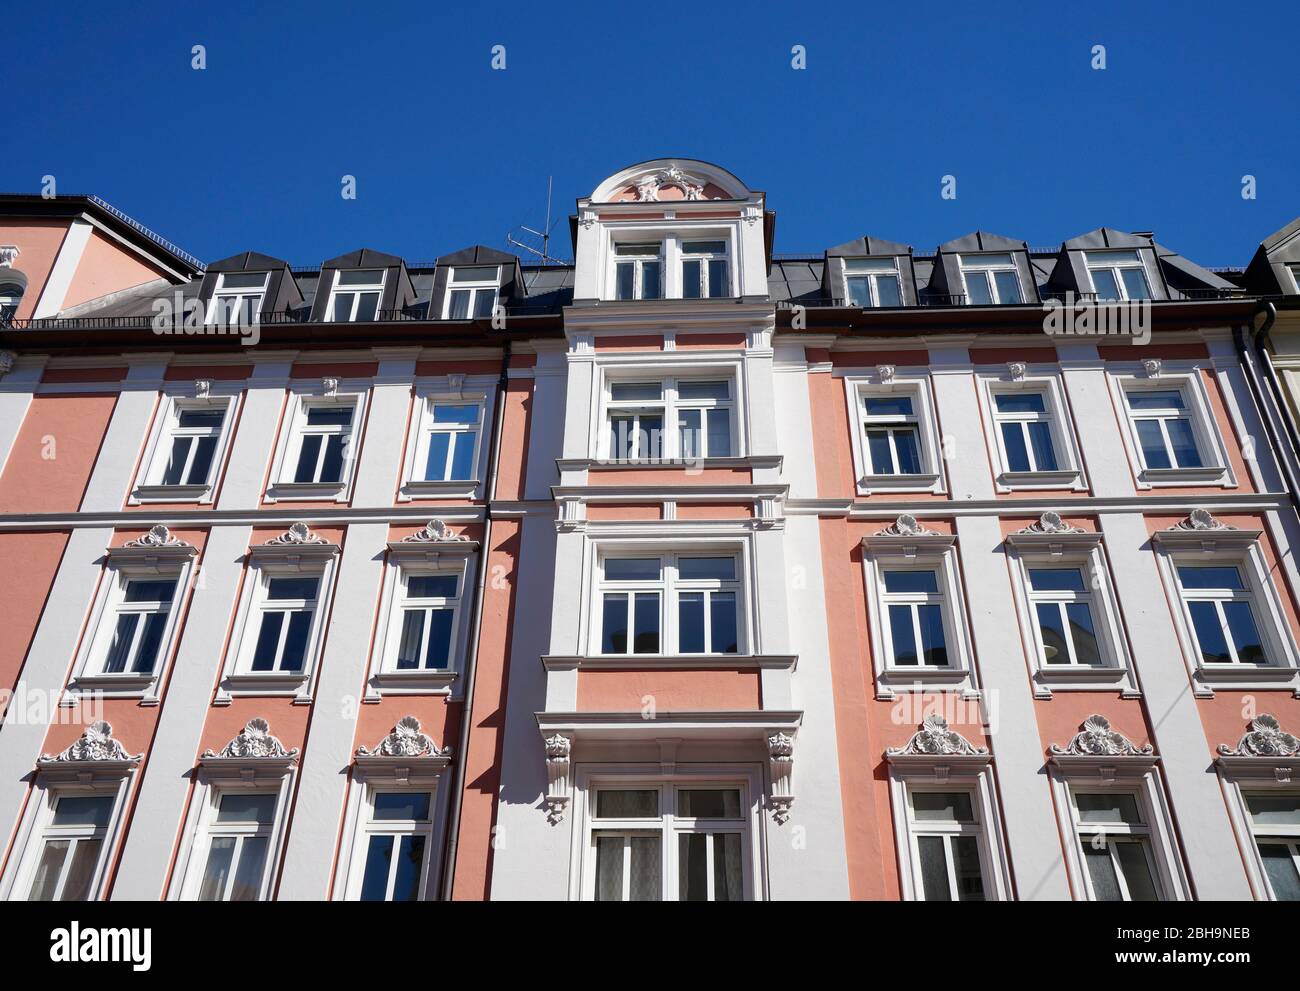 Deutschland, Bayern, München, Haidhausen, Altbauwohnungen, Reihenhaus, graue Fassade, Dachgauben Stock Photo